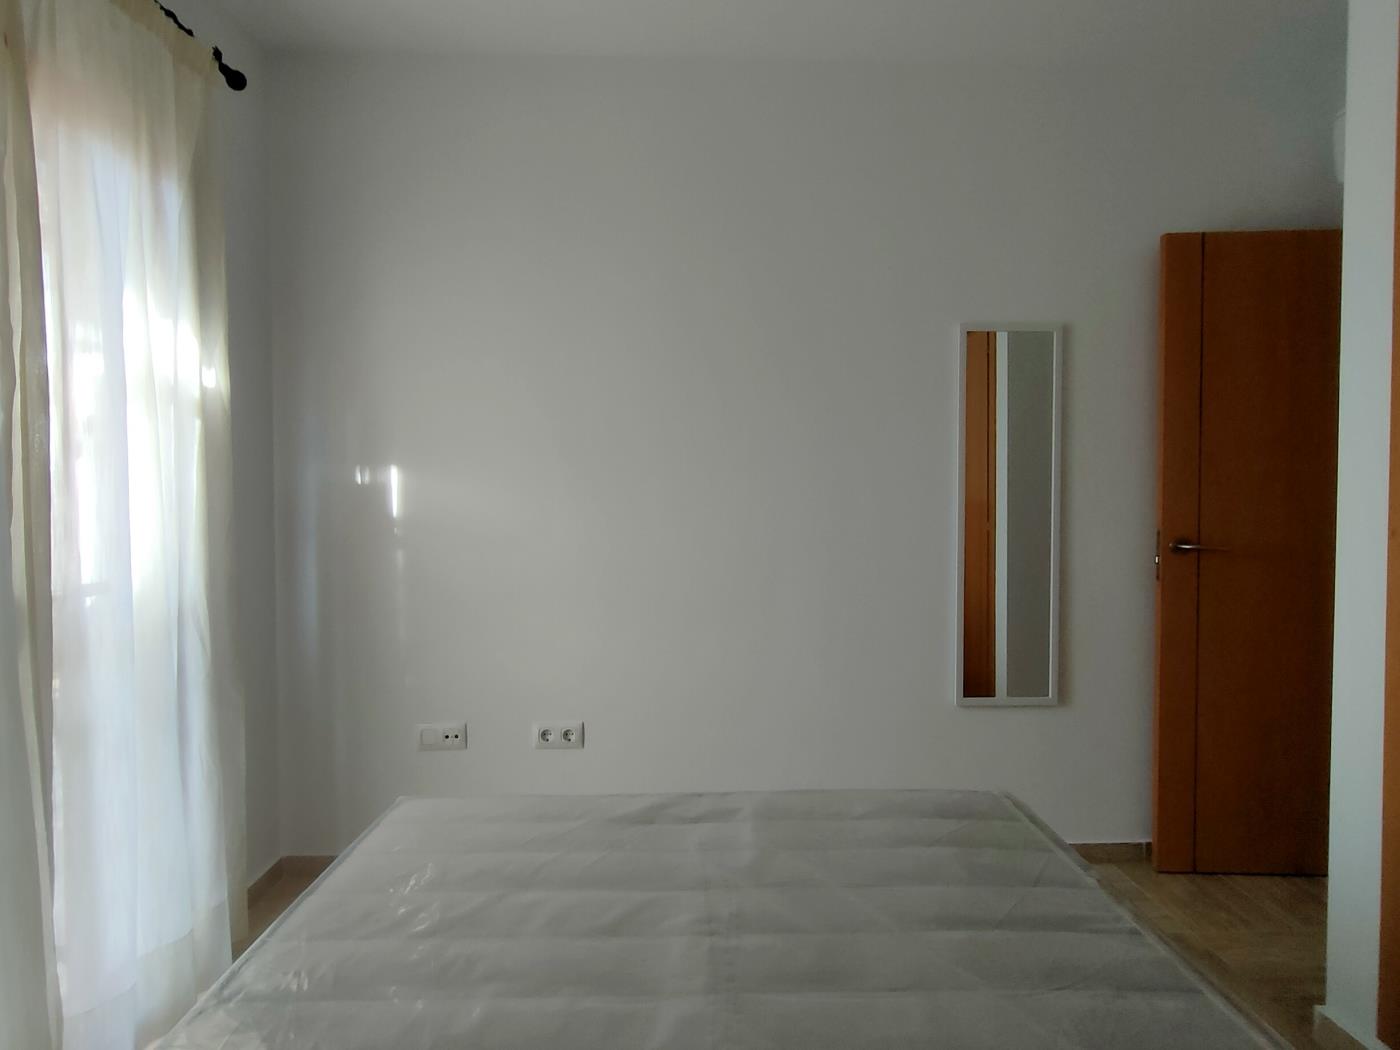 Apartamento de dos dormitorios en planta baja en Chiclana de la Frontera